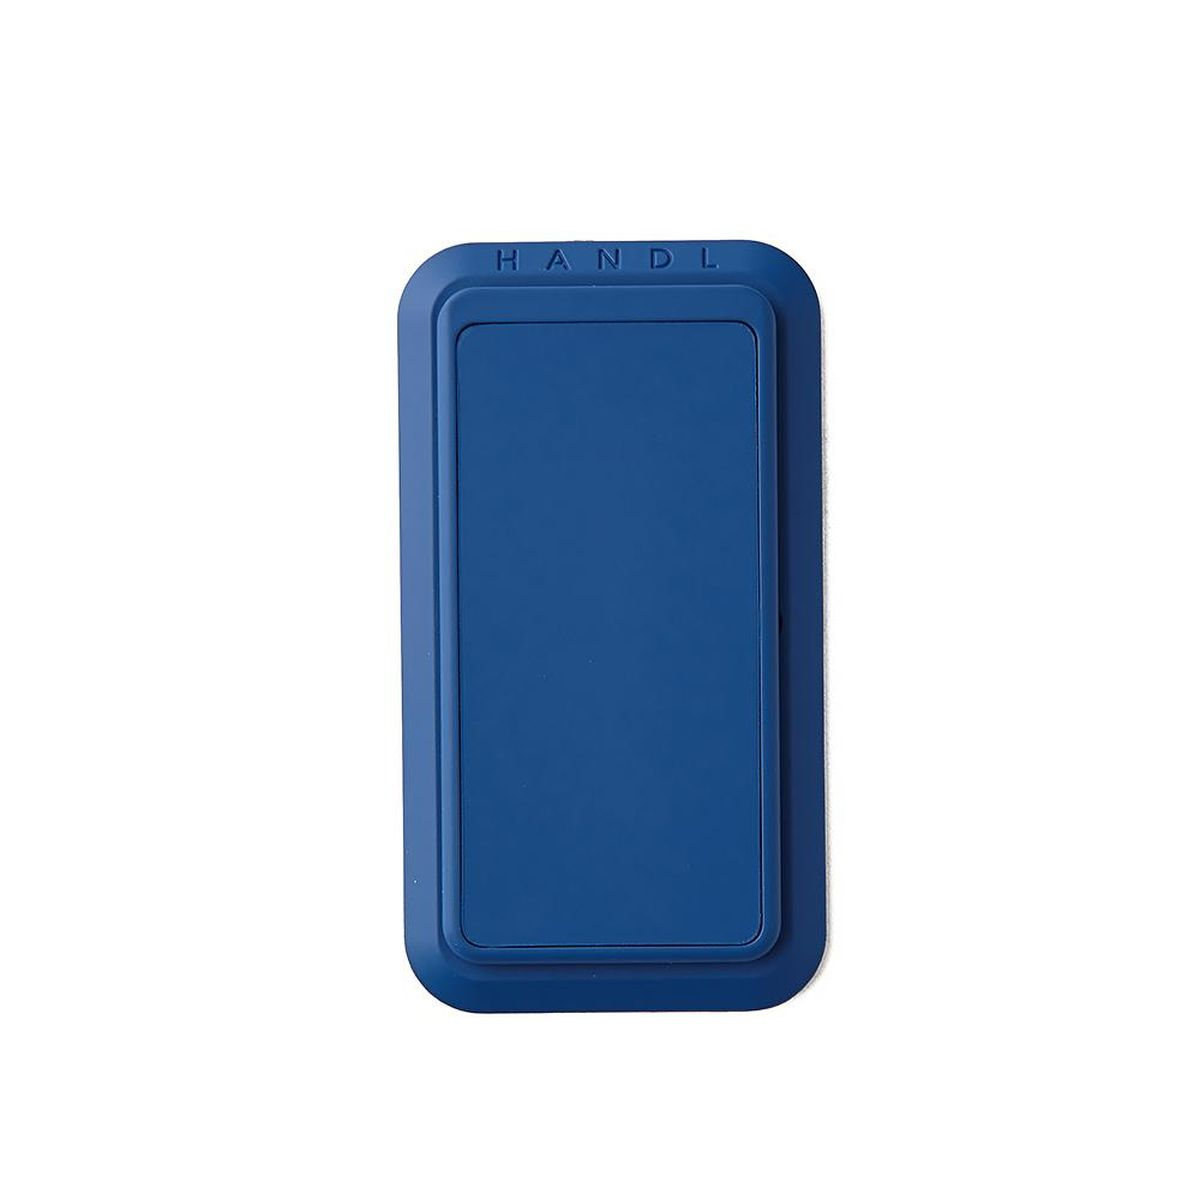 HANDL HX1005-BLU-N blau Handyhalterung, classic